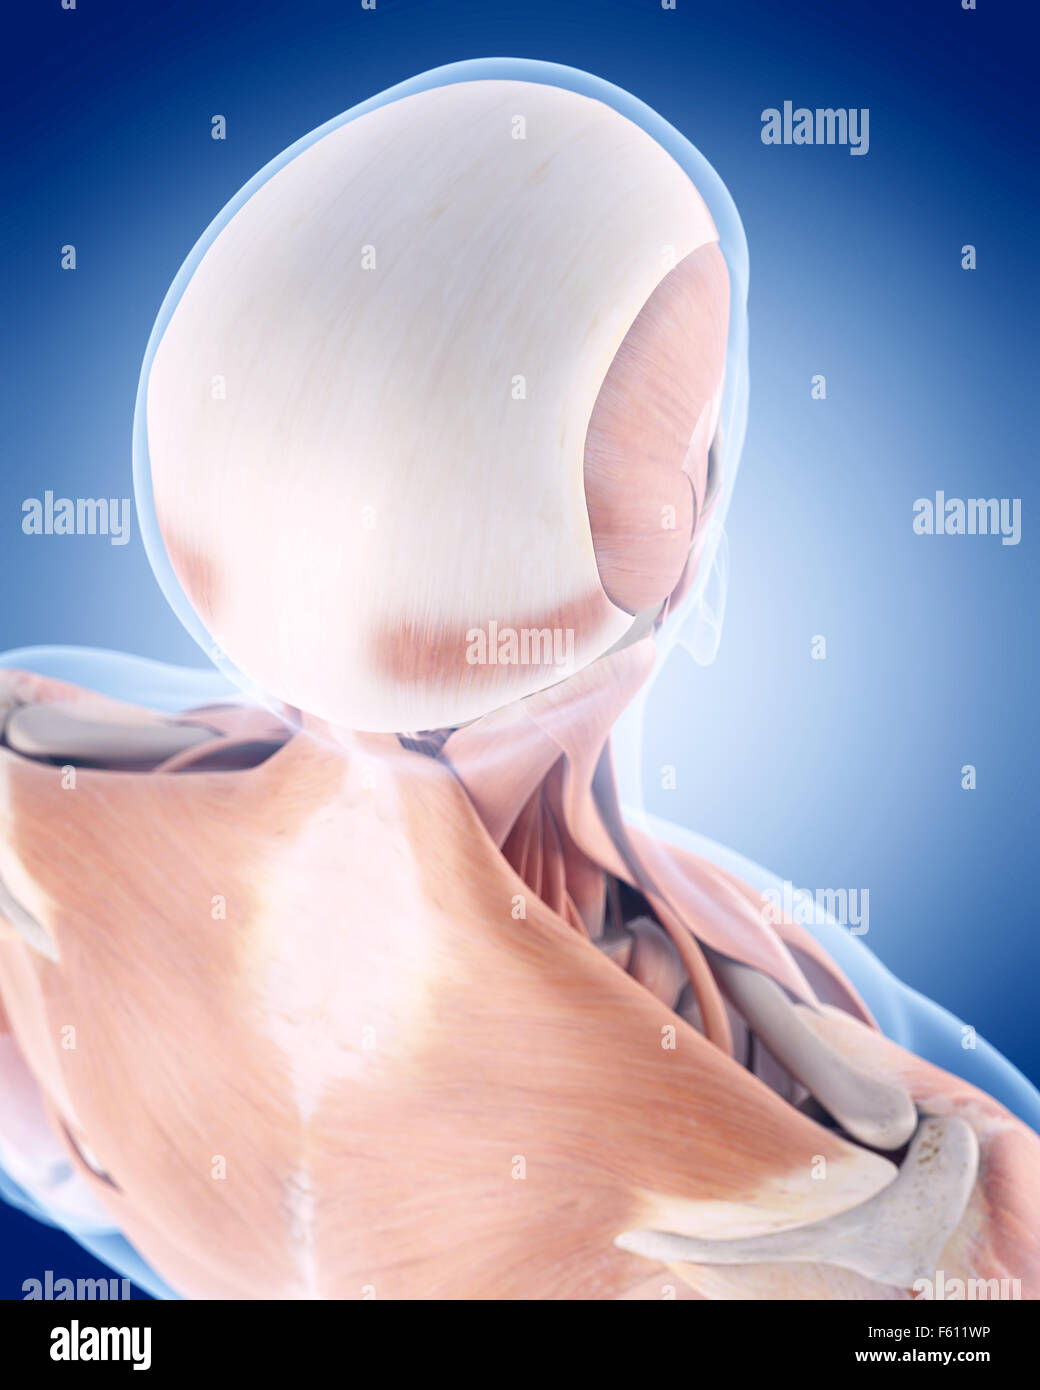 Dal punto di vista medico illustrazione accurata dei muscoli della schiena Foto Stock